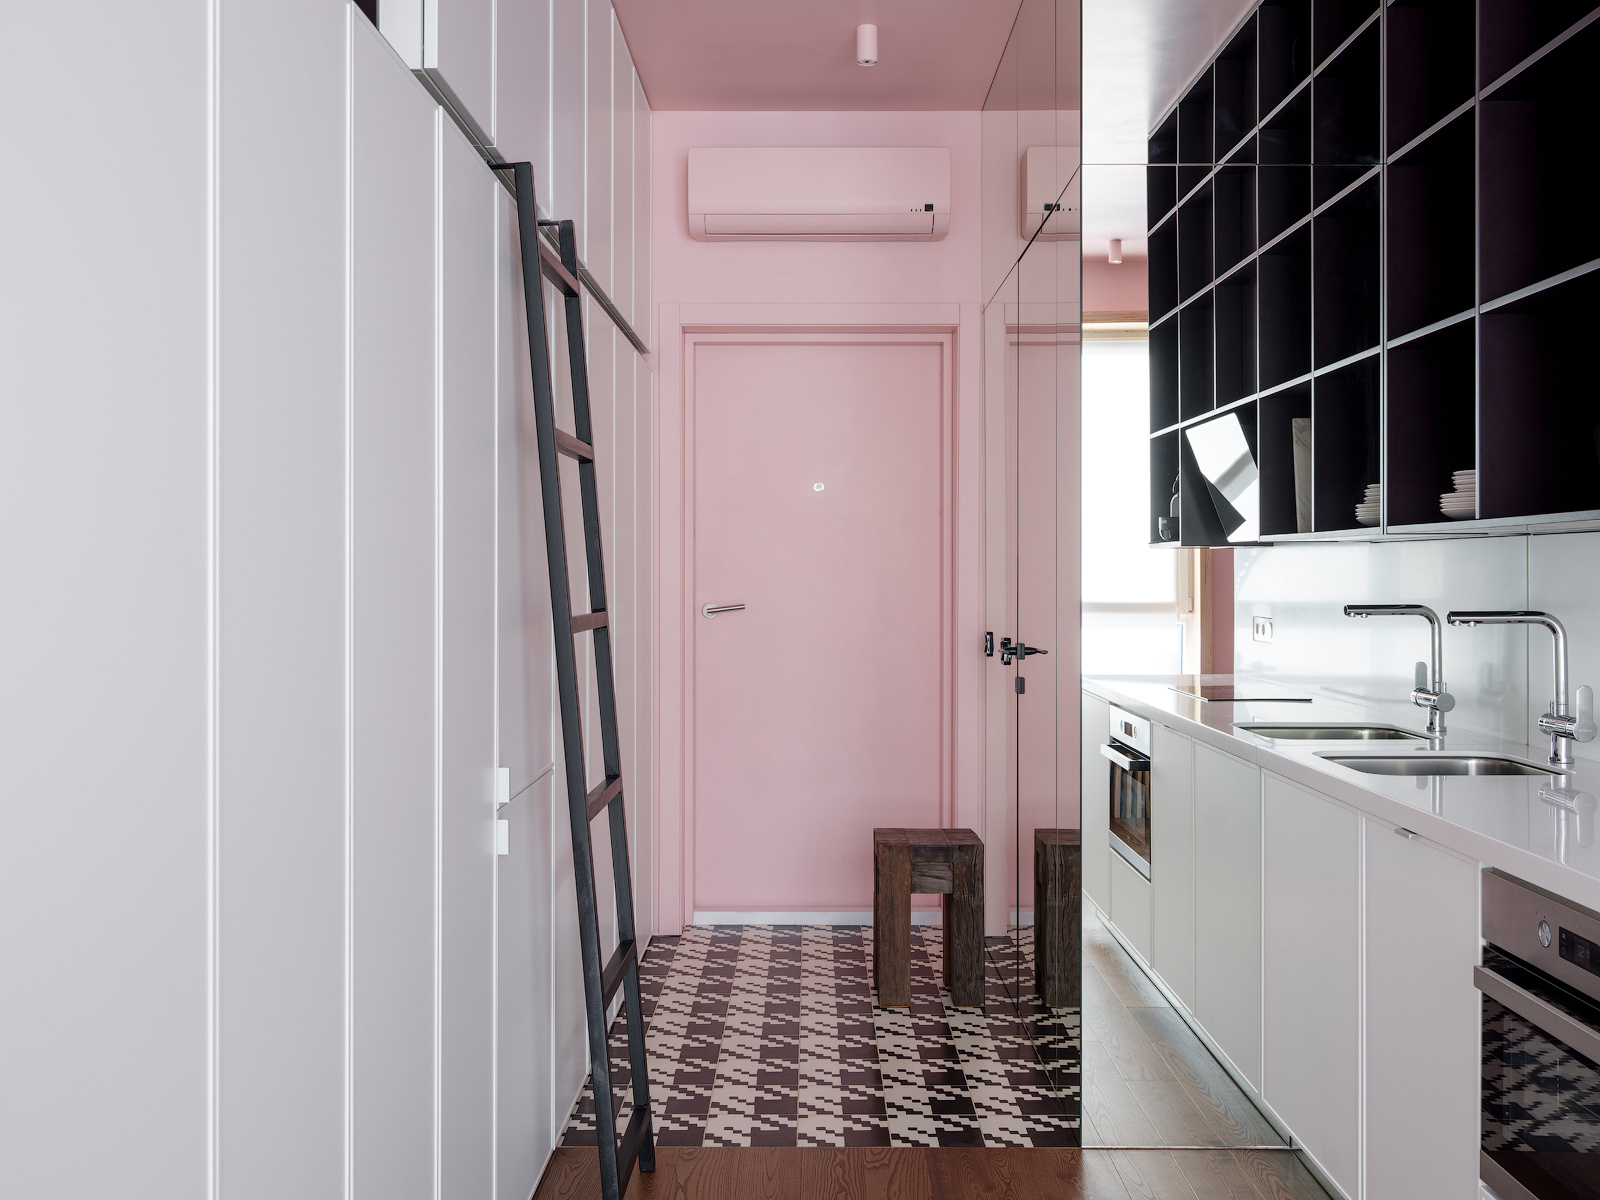 Lối vào căn hộ với tường, trần và cánh cửa màu hồng phấn, ngay cả chiếc máy lạnh và đèn trần cũng được sơn theo gam màu yêu thích của nữ chủ nhân. Phần sàn được lát gạch họa tiết cá tính, nổi bật so với sàn gỗ bên trong khu vực sinh hoạt chính.